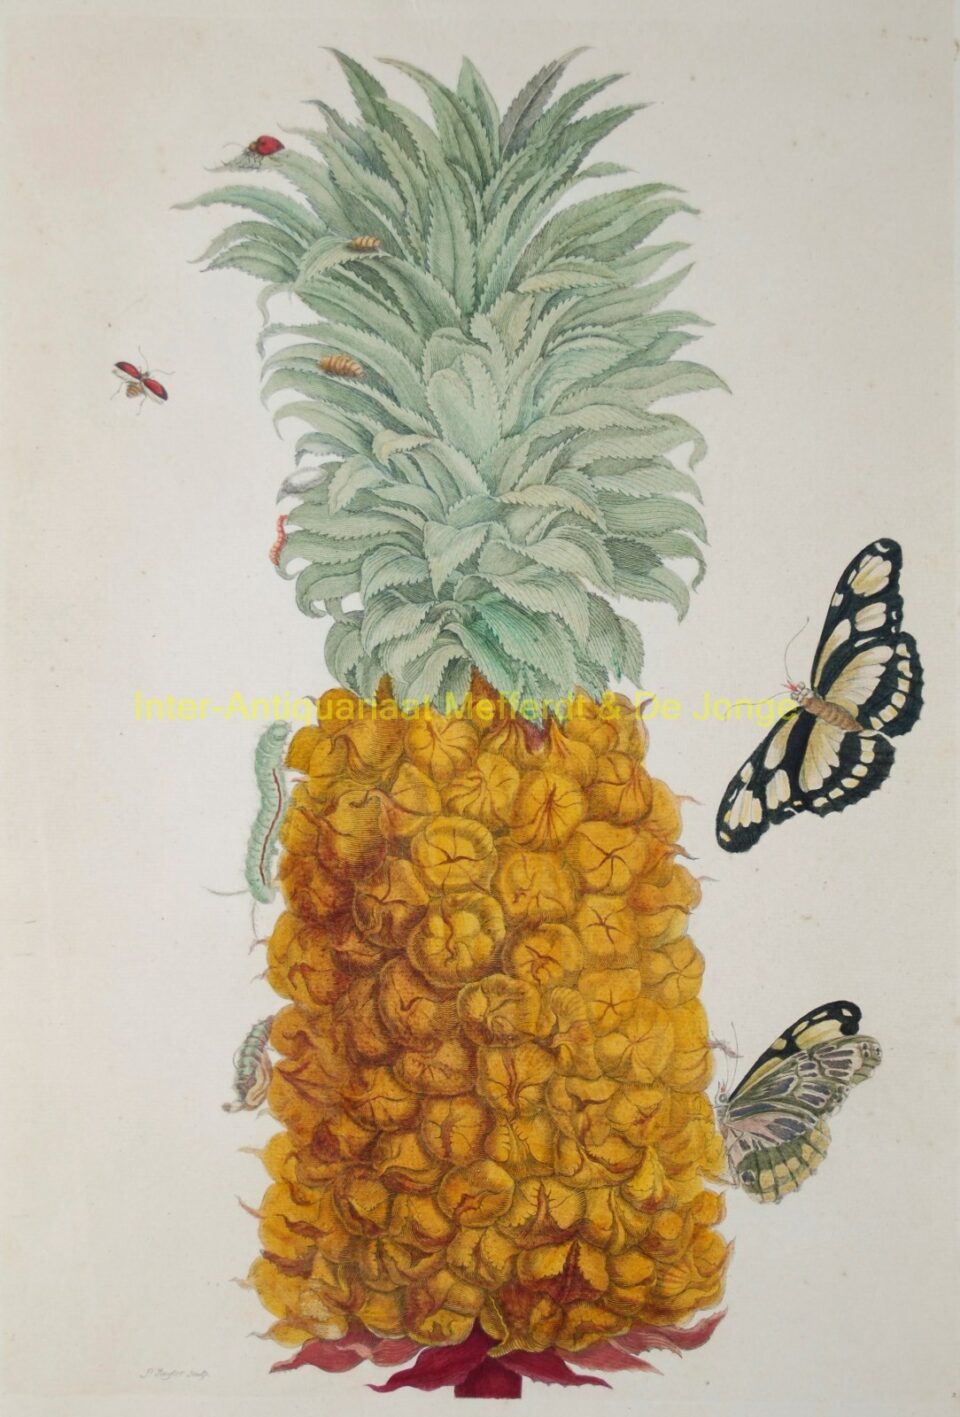 Maria Sibylla Merian - Ananas (Pineapple)